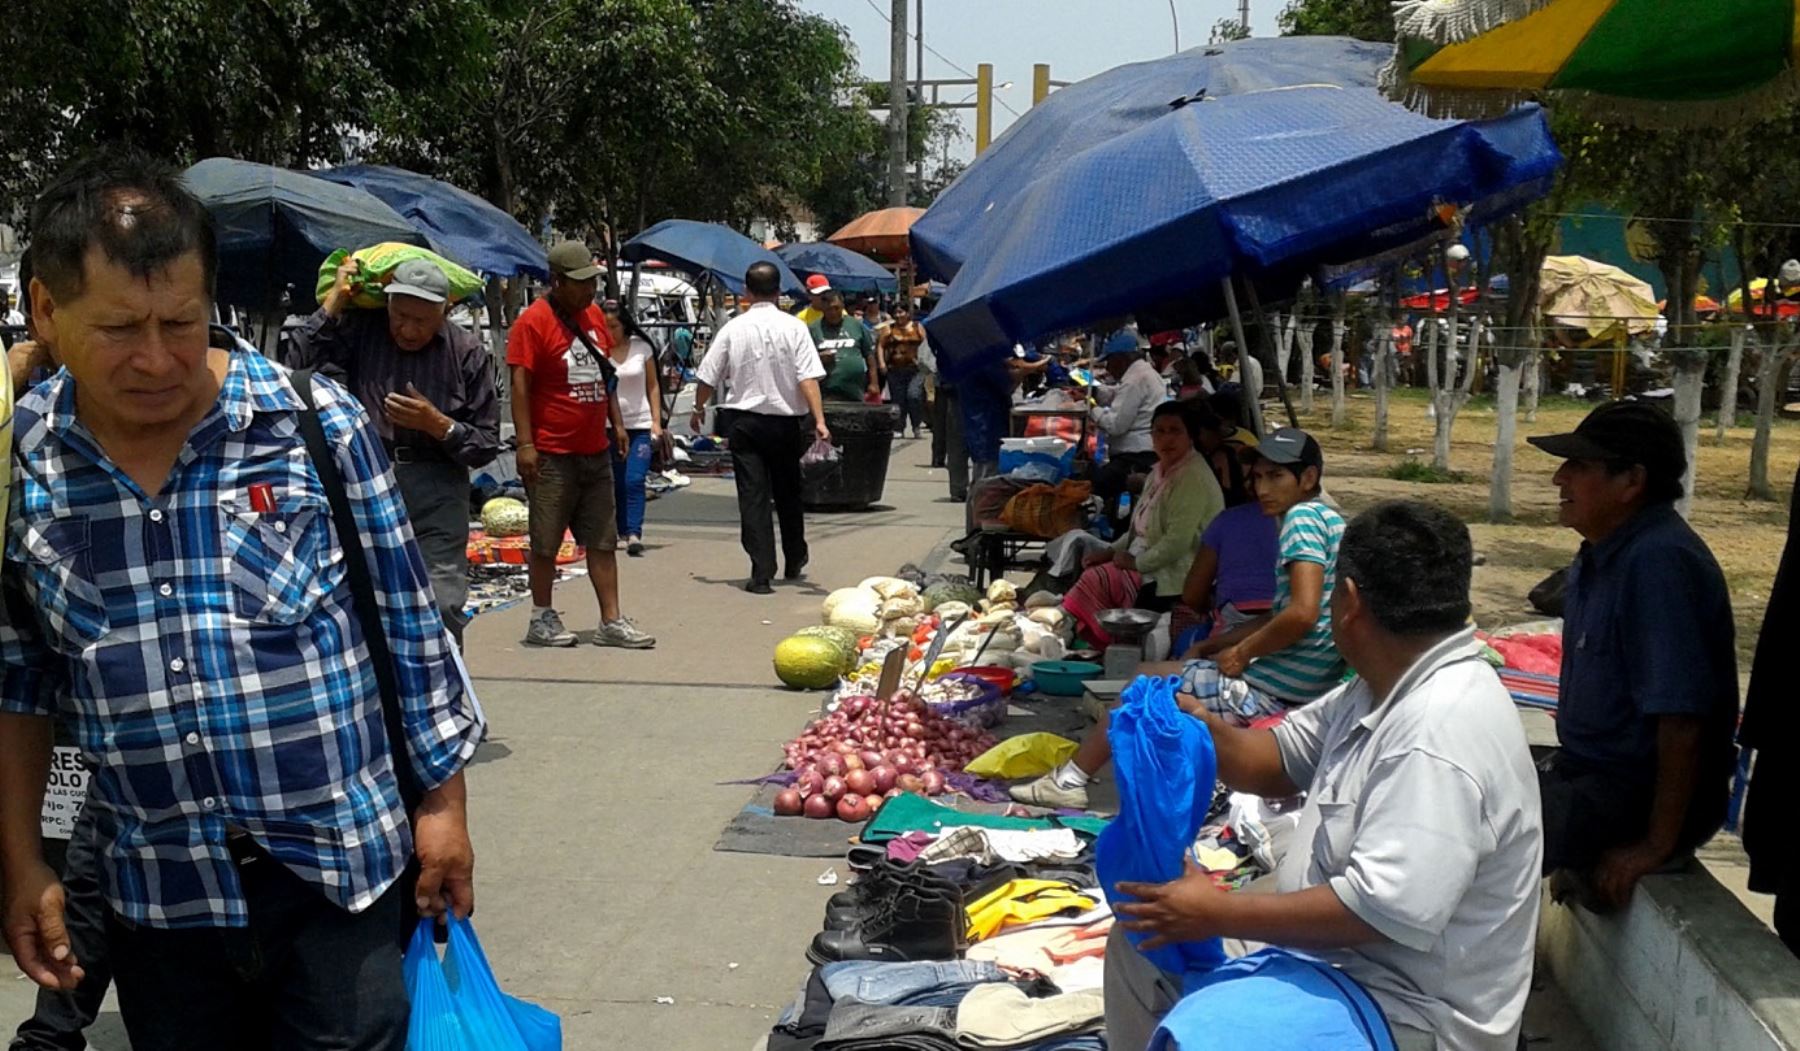 Comerciantes informales habían ocupado zona comercial de Caquetá, en el distrito del Rímac, por mucho tiempo y tal situación generaba inseguridad ciudadana e insalubridad.